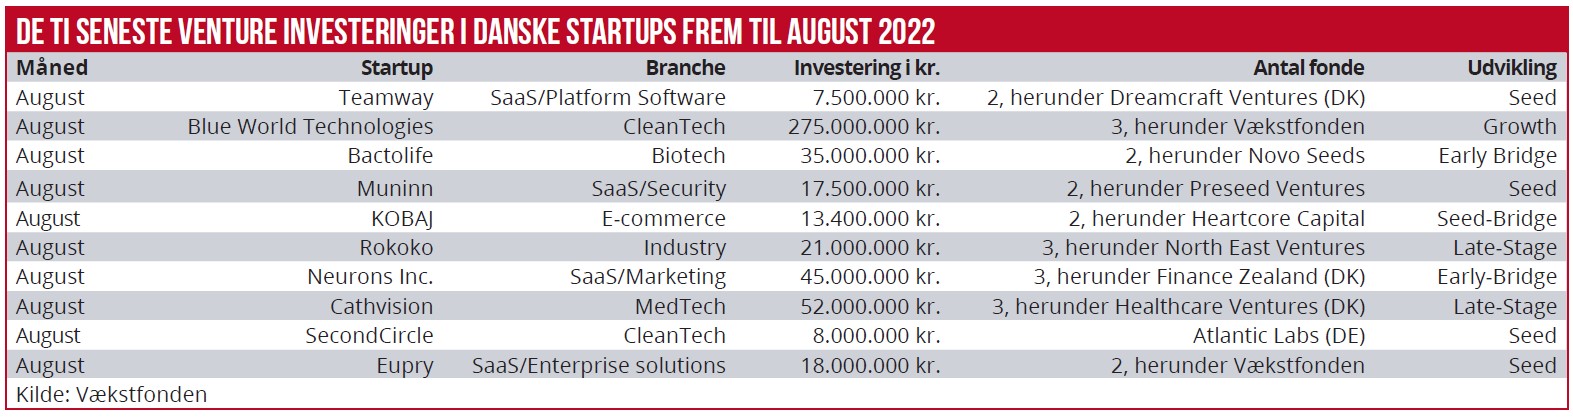 De 10 seneste venture investeringer i danske startups frem til august 2022